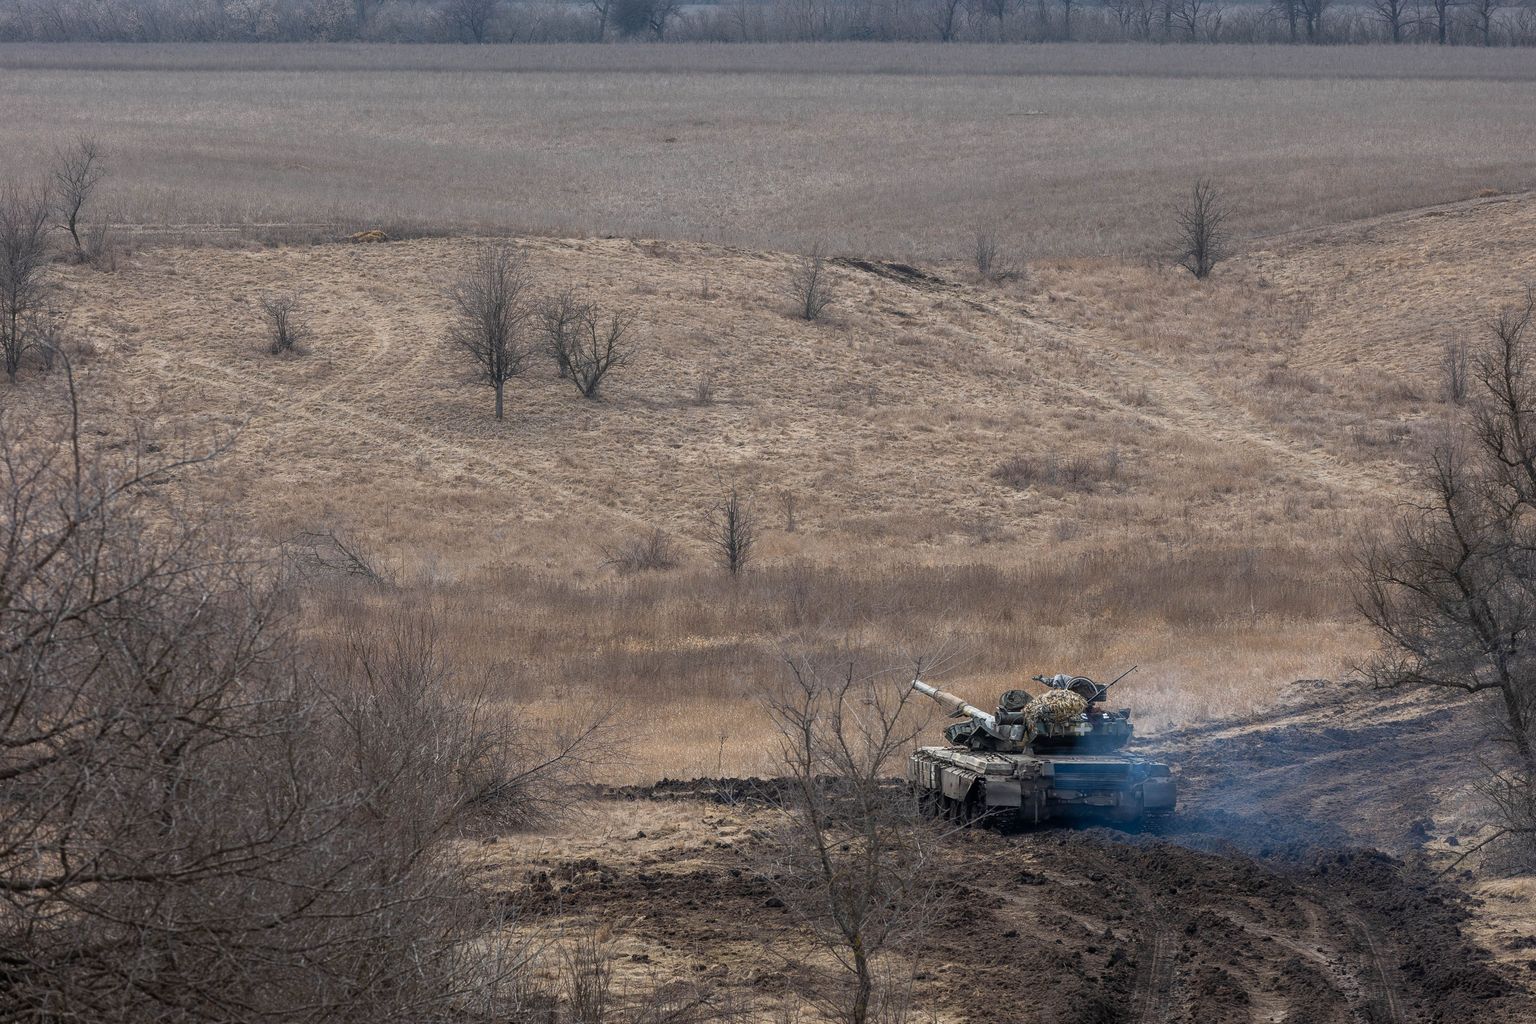 Ukraina 1. tankibrigaadi T-64 tank Lõuna-Donbassis Vuhledari lähedal. Hästi on näha avarad põllumassiivid, millel käivad seal lahingud. Põlde ümbritsevad kitsad puuderivid.